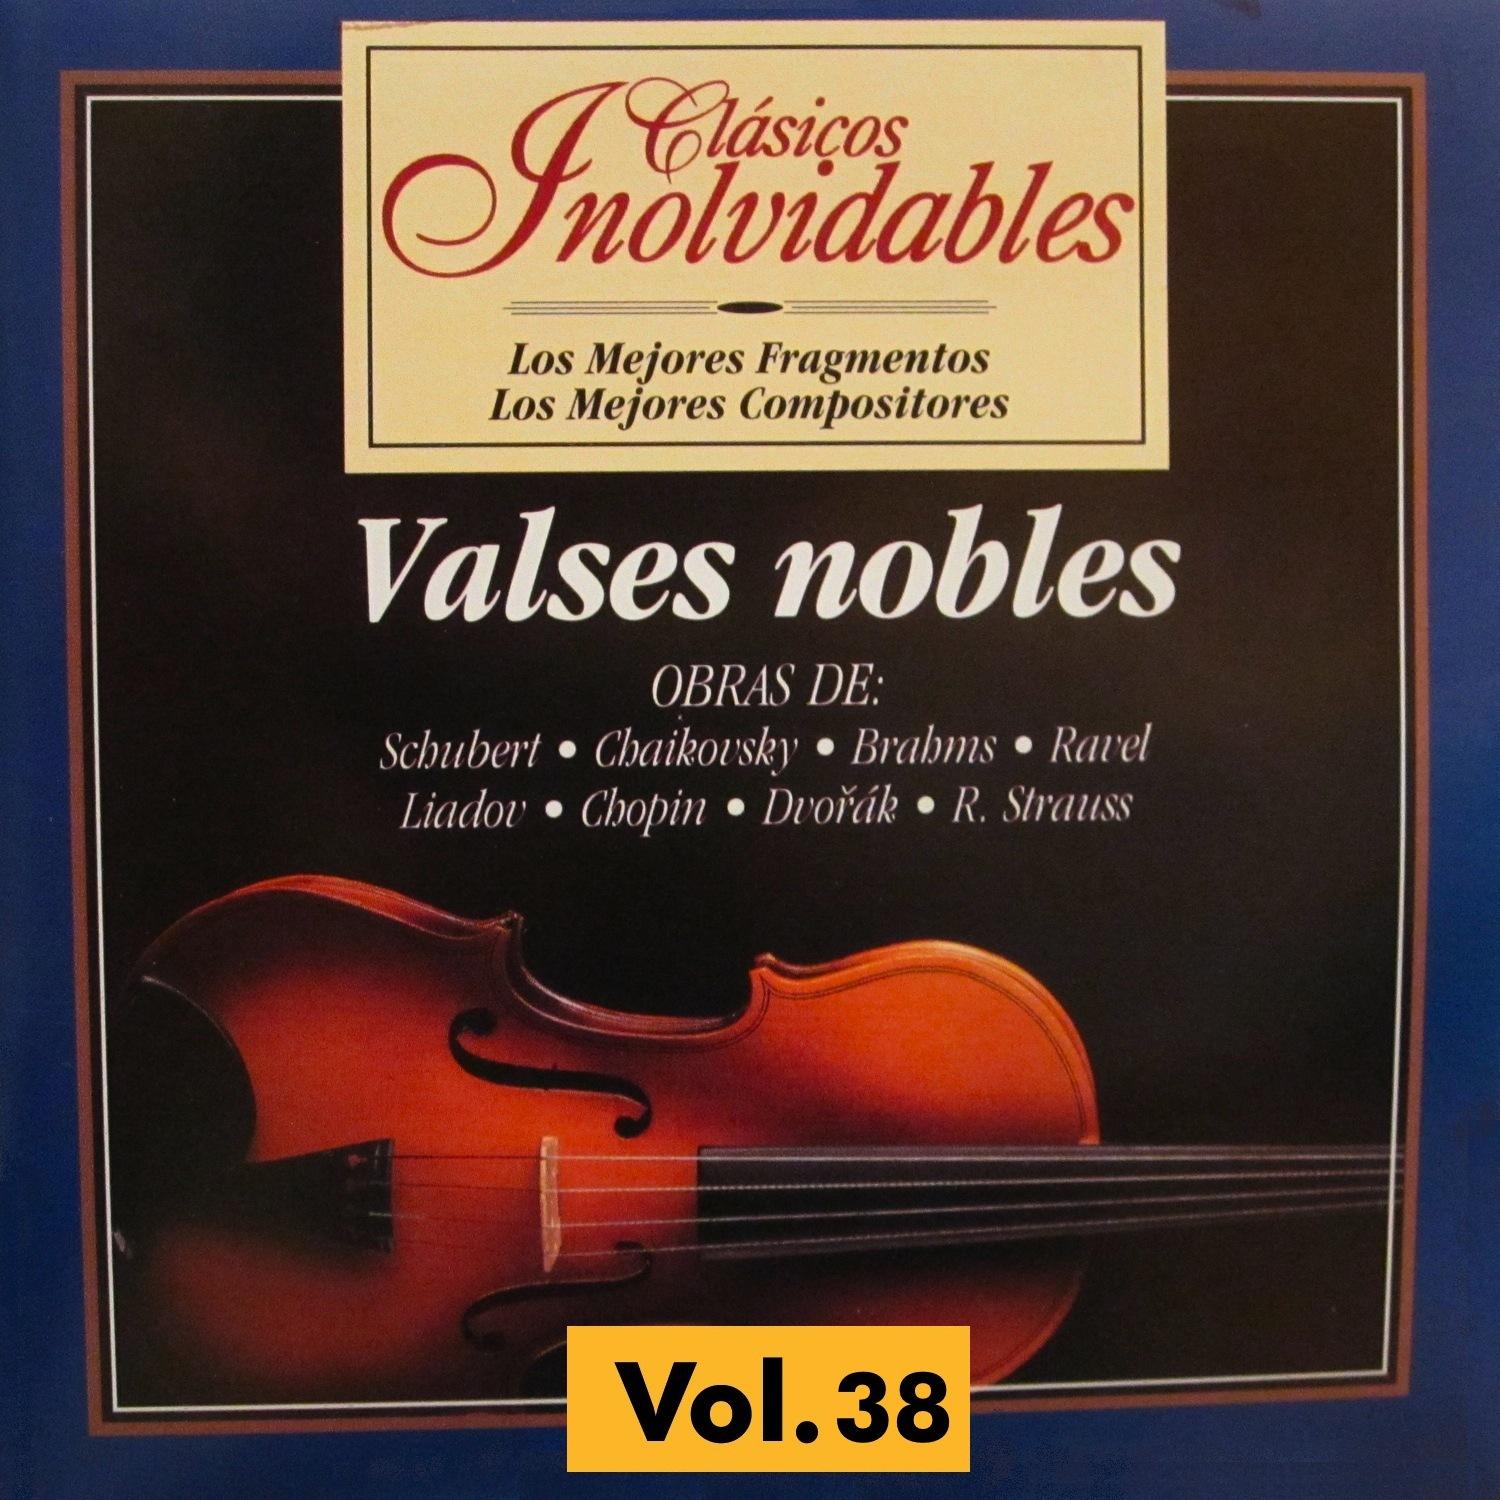 Cla sicos Inolvidables Vol. 38, Valses Nobles